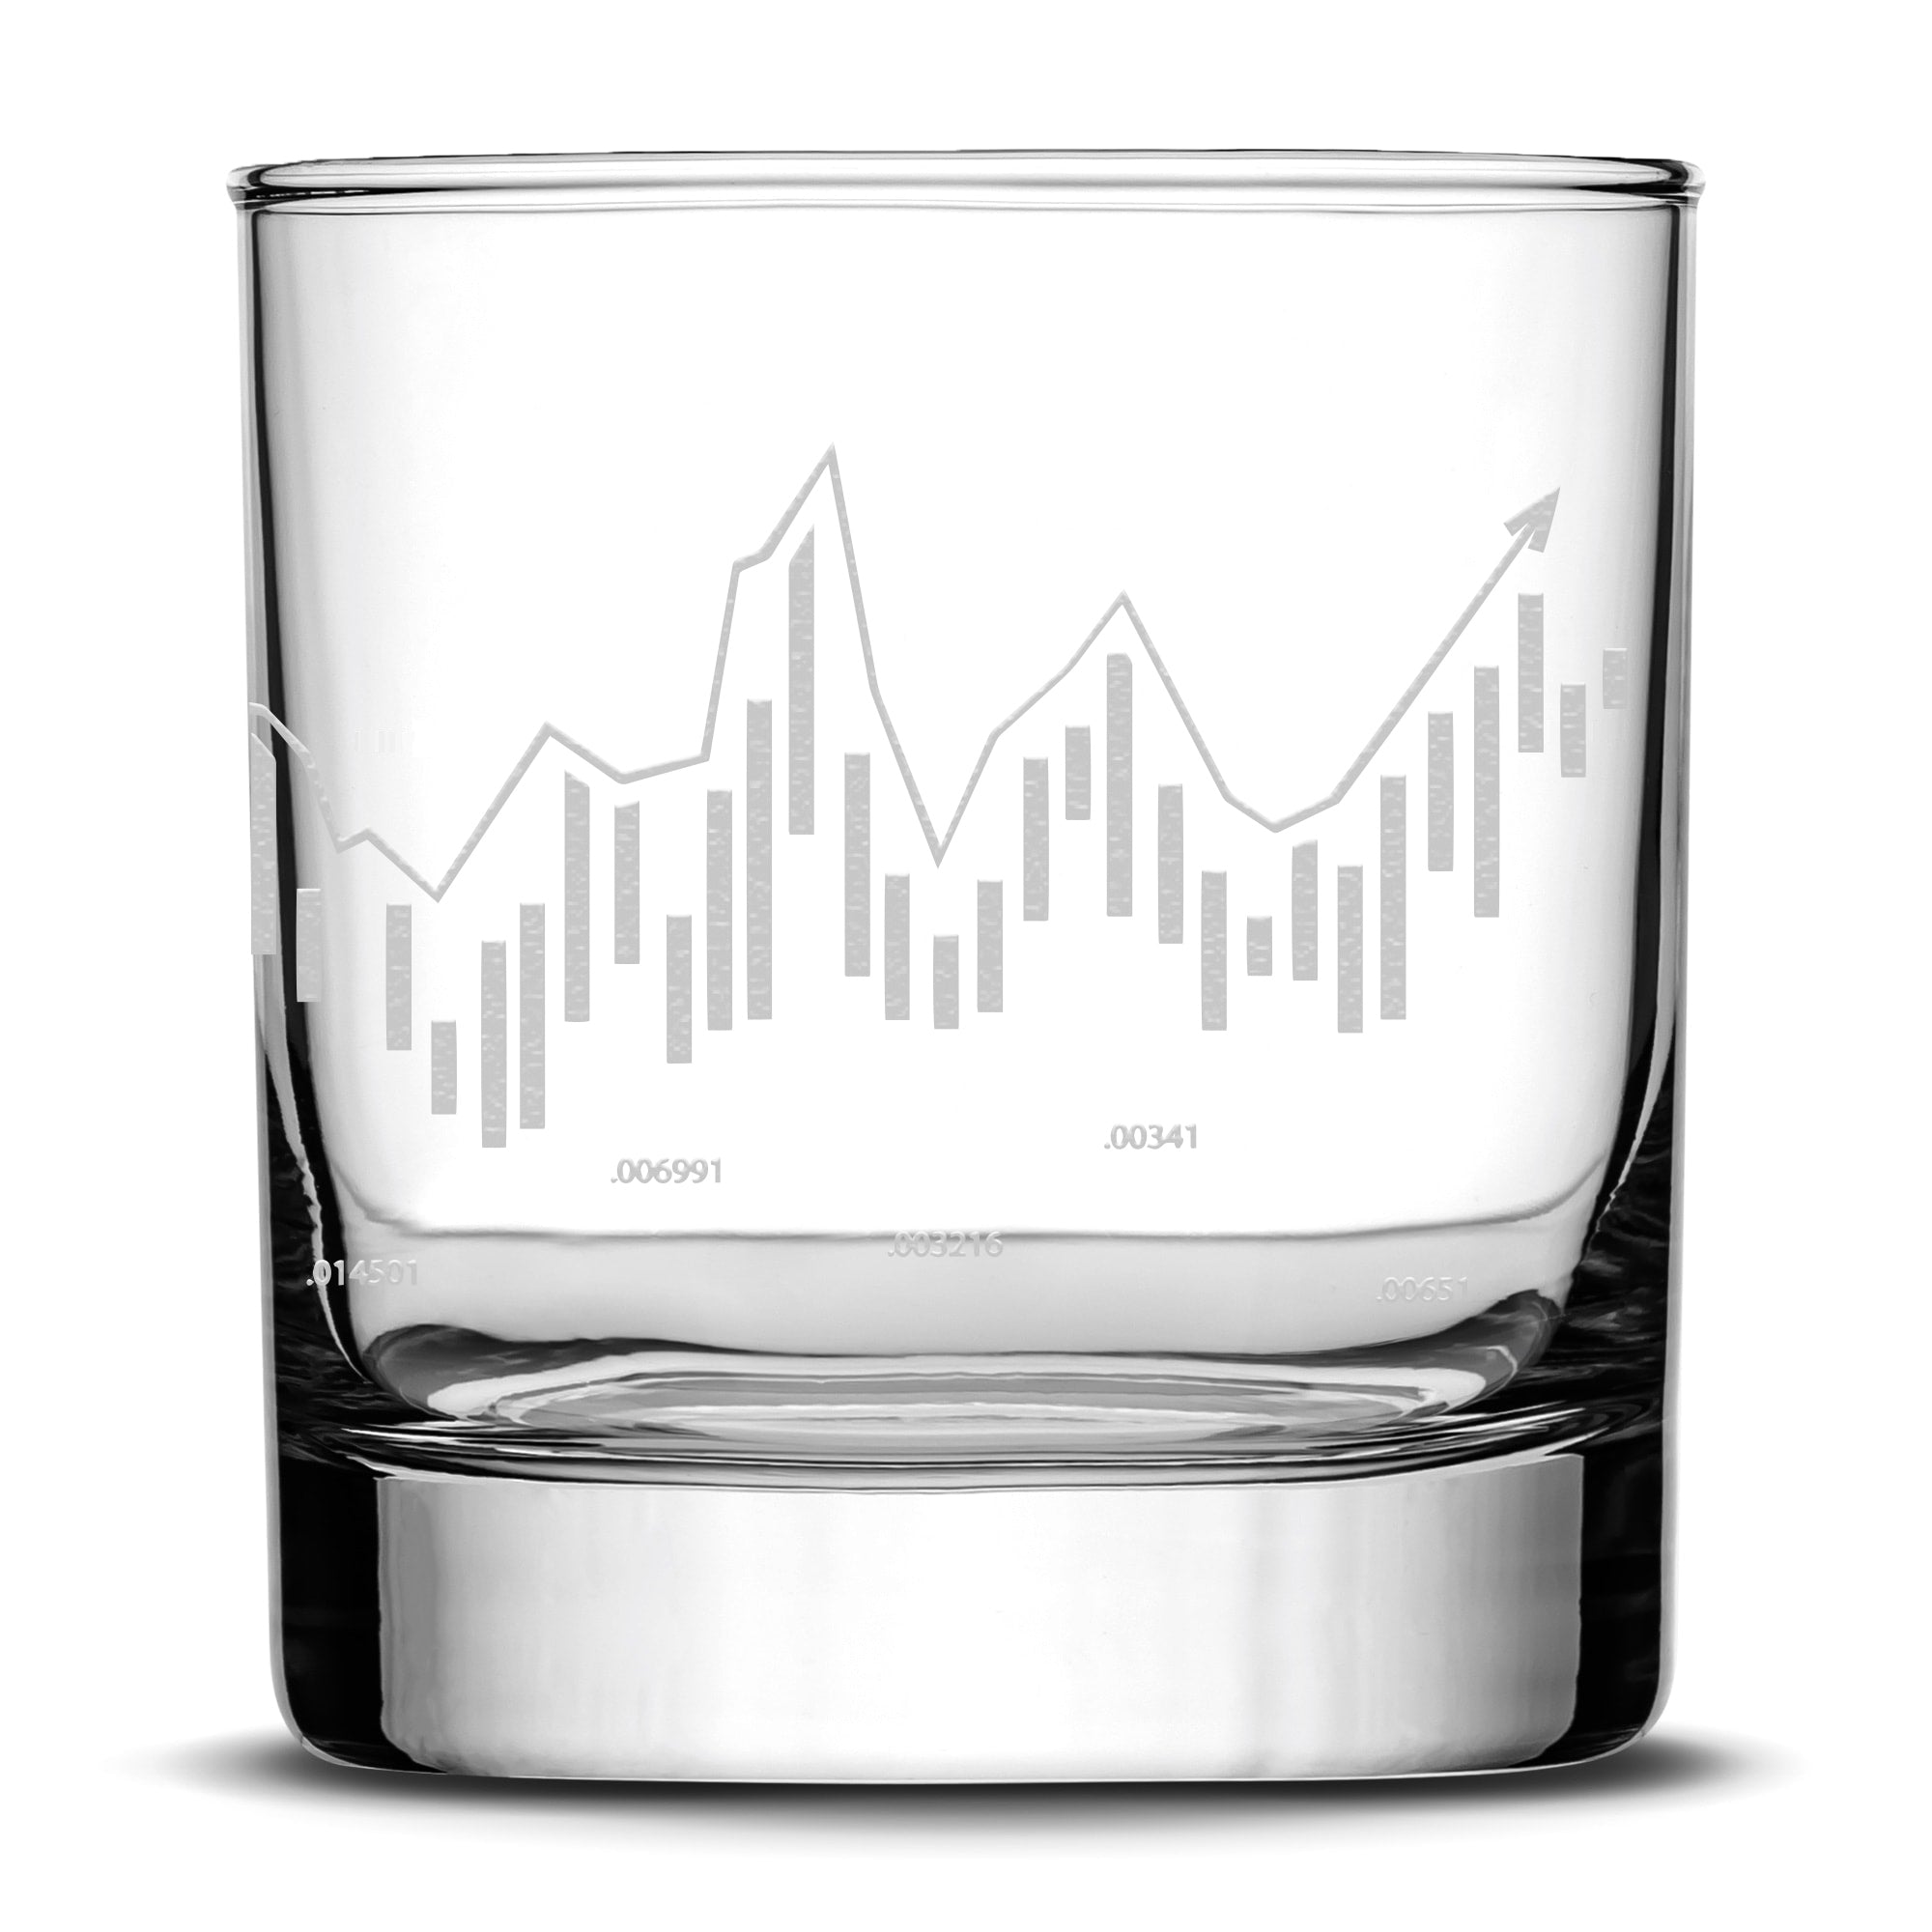 Integrity Bottles Premium, Stock Market, Whiskey Glass, Full 360° Degree Laser Engraved, Rocks Glass, Made in USA, 11oz